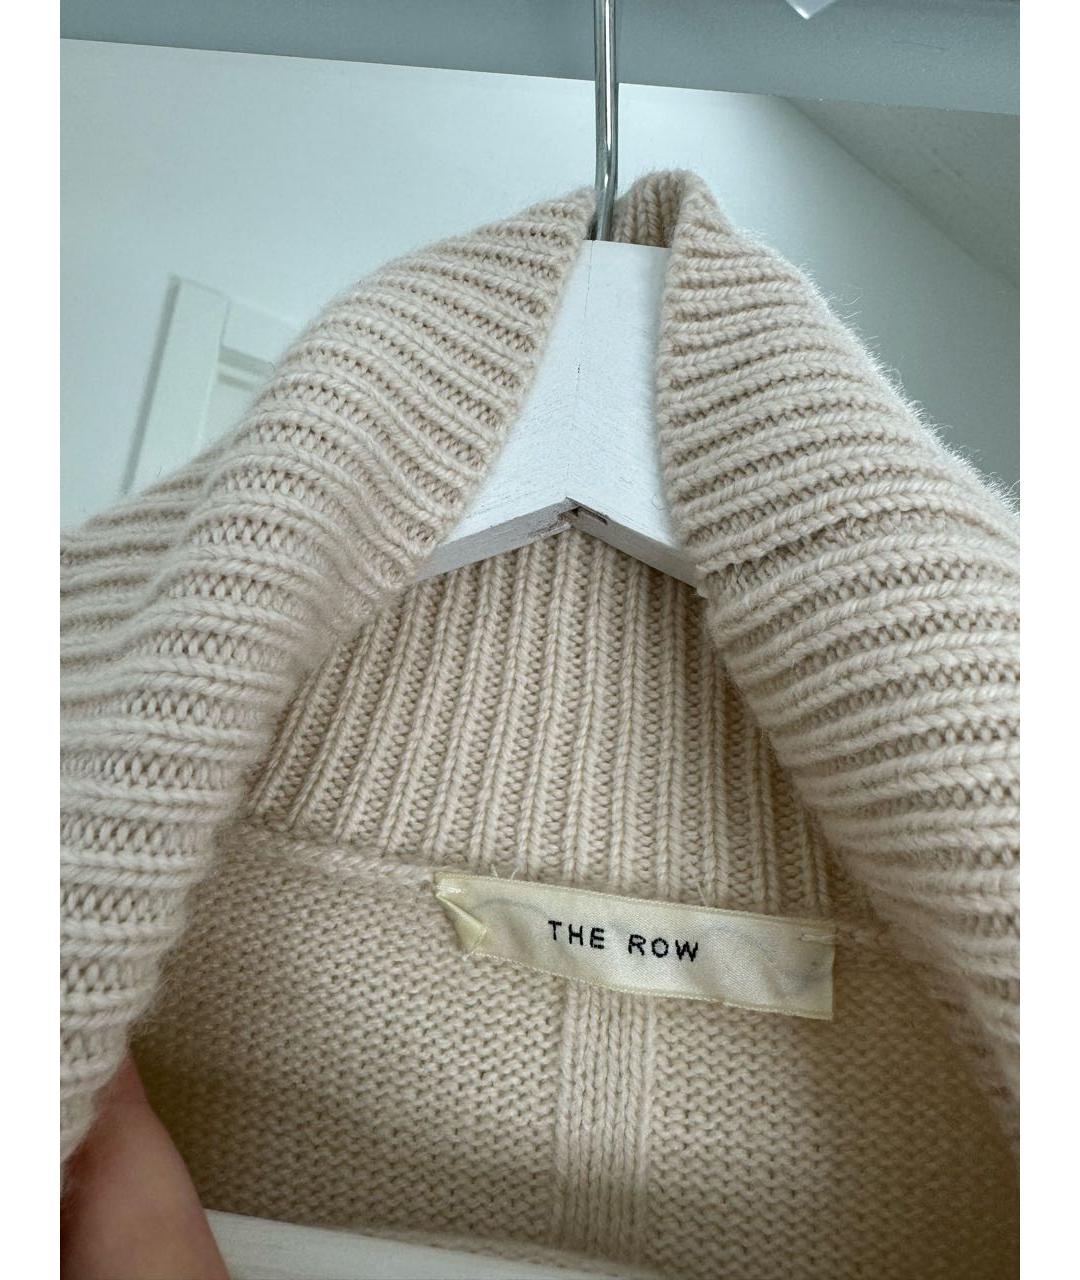 THE ROW Бежевый кашемировый джемпер / свитер, фото 2